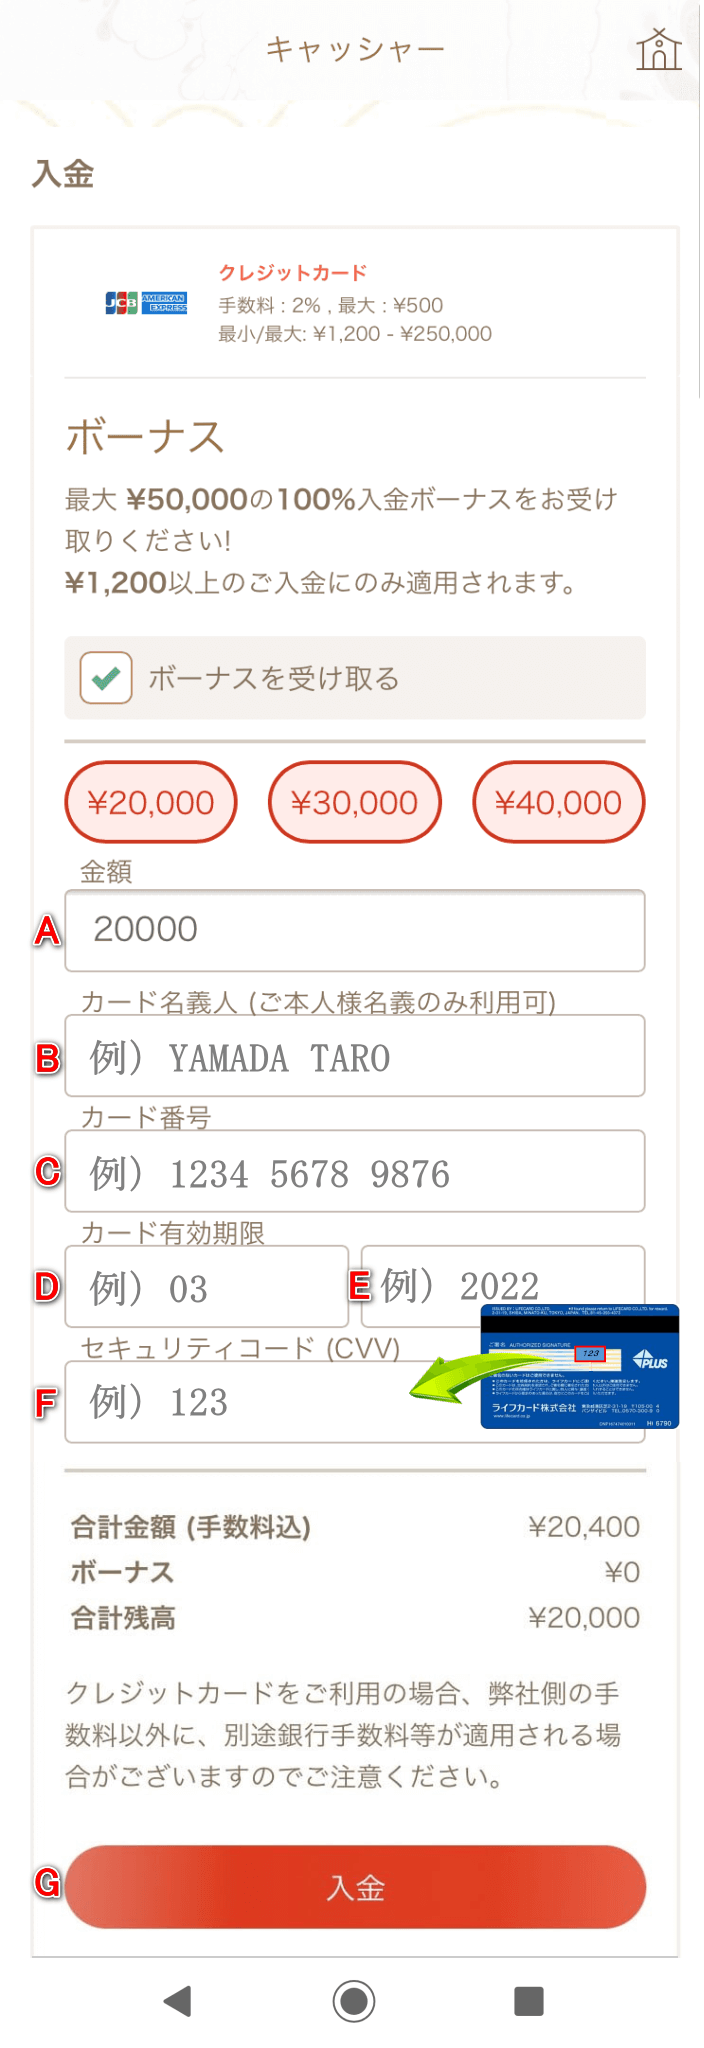 遊雅堂（Yuugado）アカウントへクレジットカードによる入金イメージ